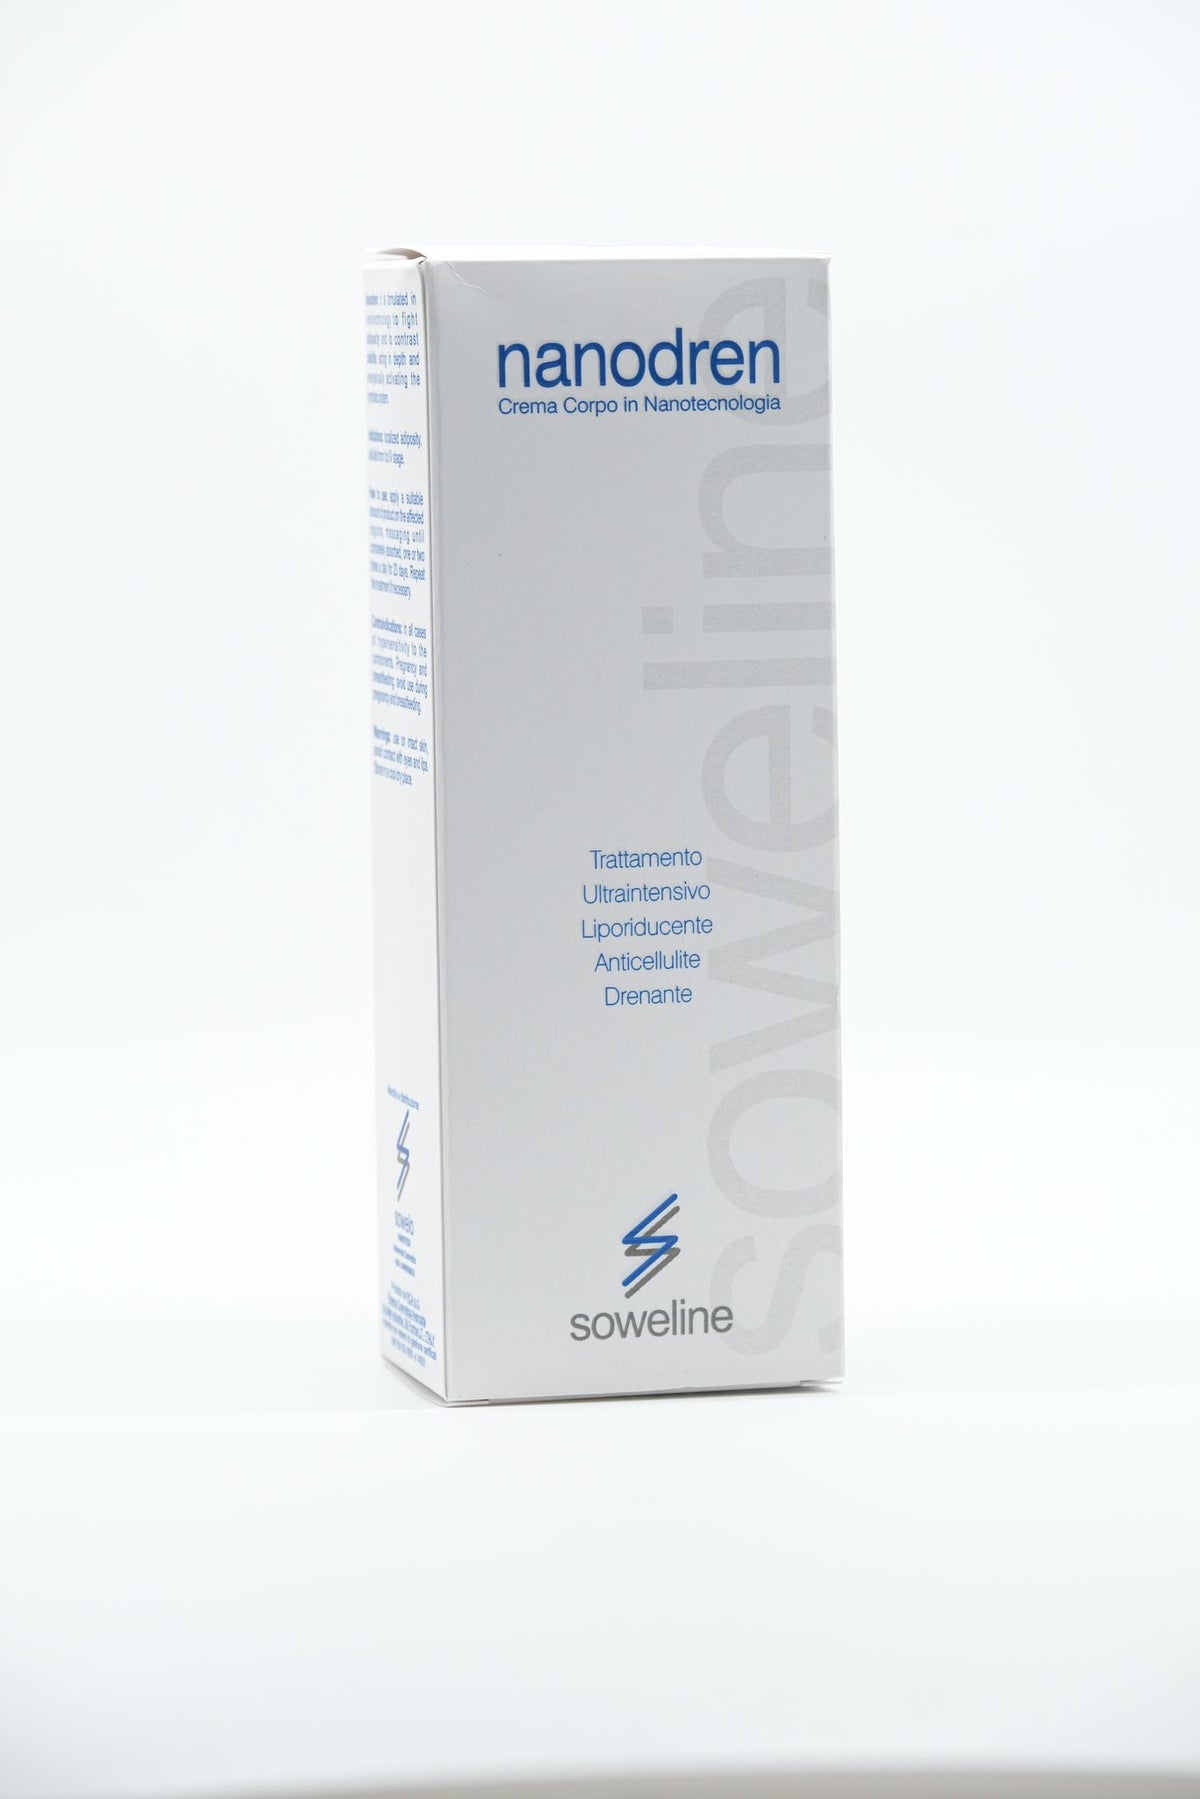 Nanodren